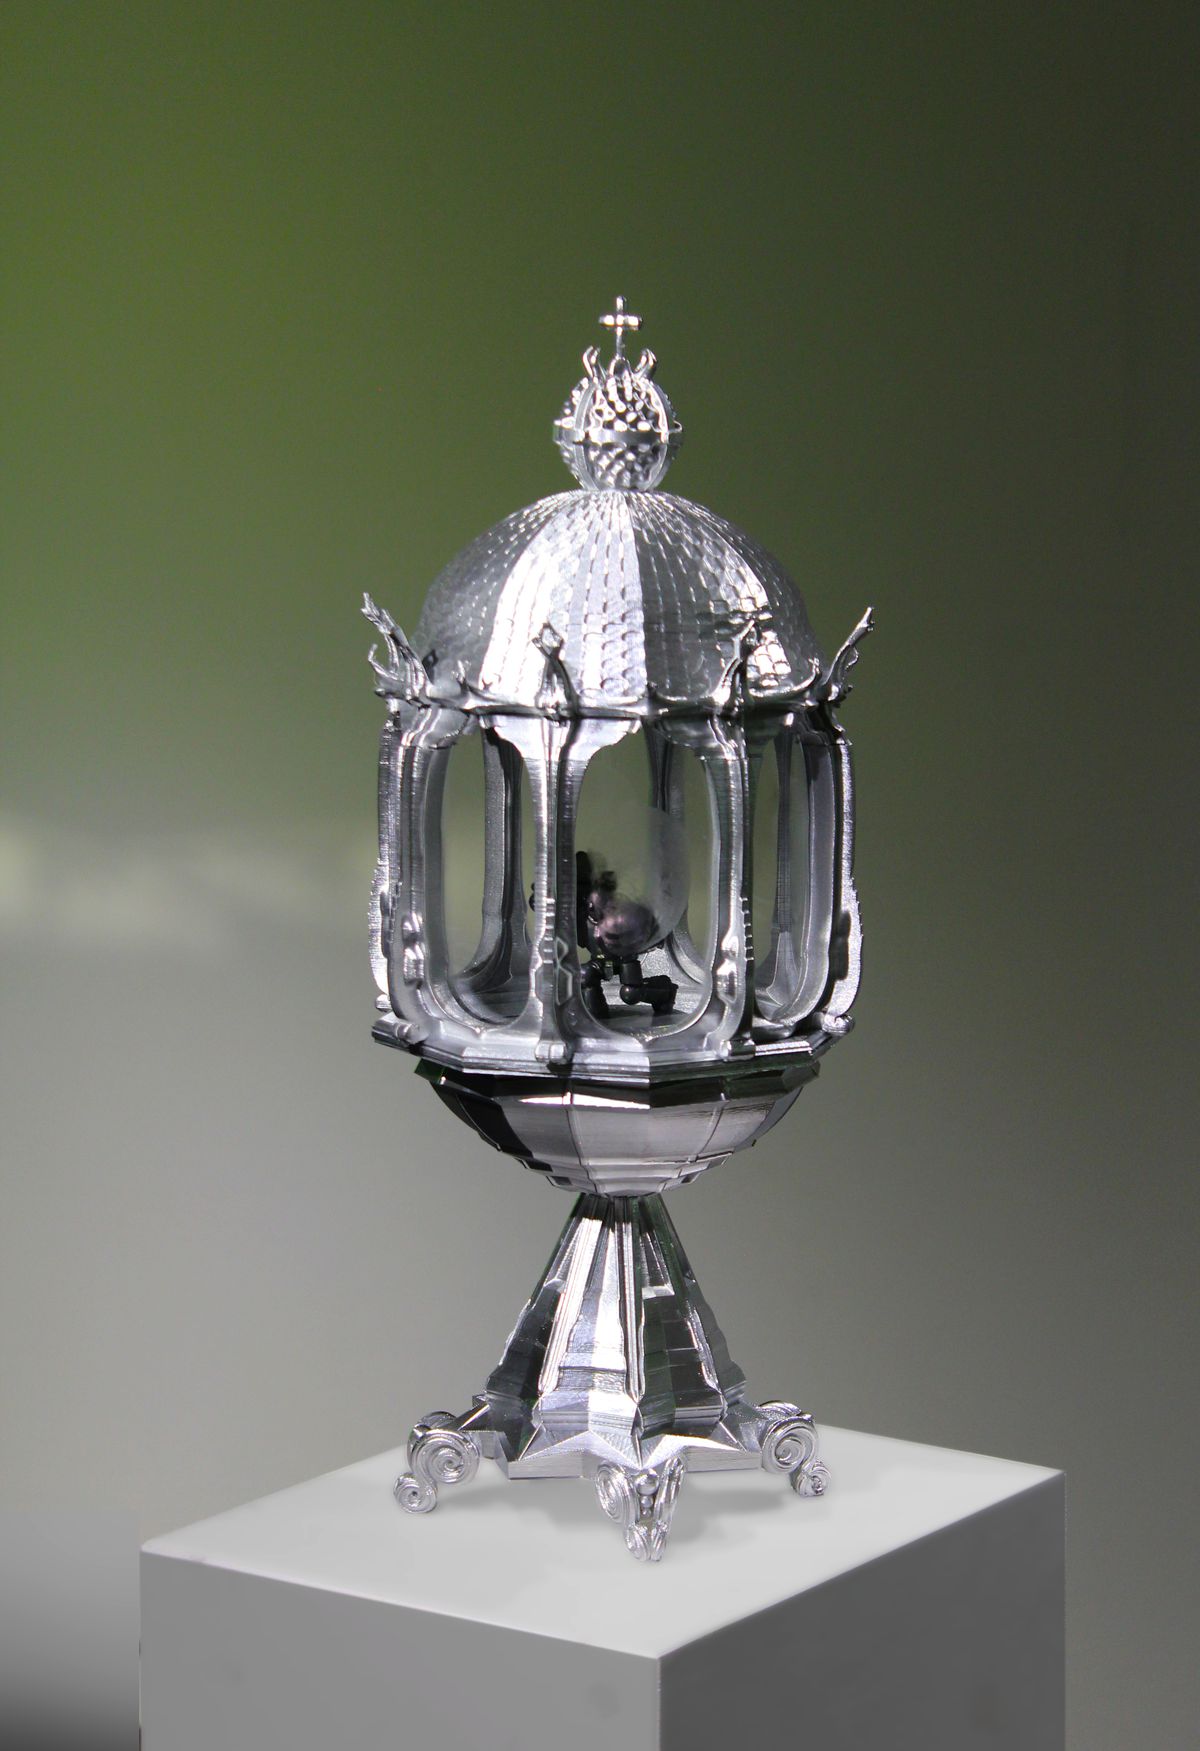 Un reliquiario d'argento decorato contenente una statuina di Space Marine di Warhammer 40.000 in posizione inginocchiata